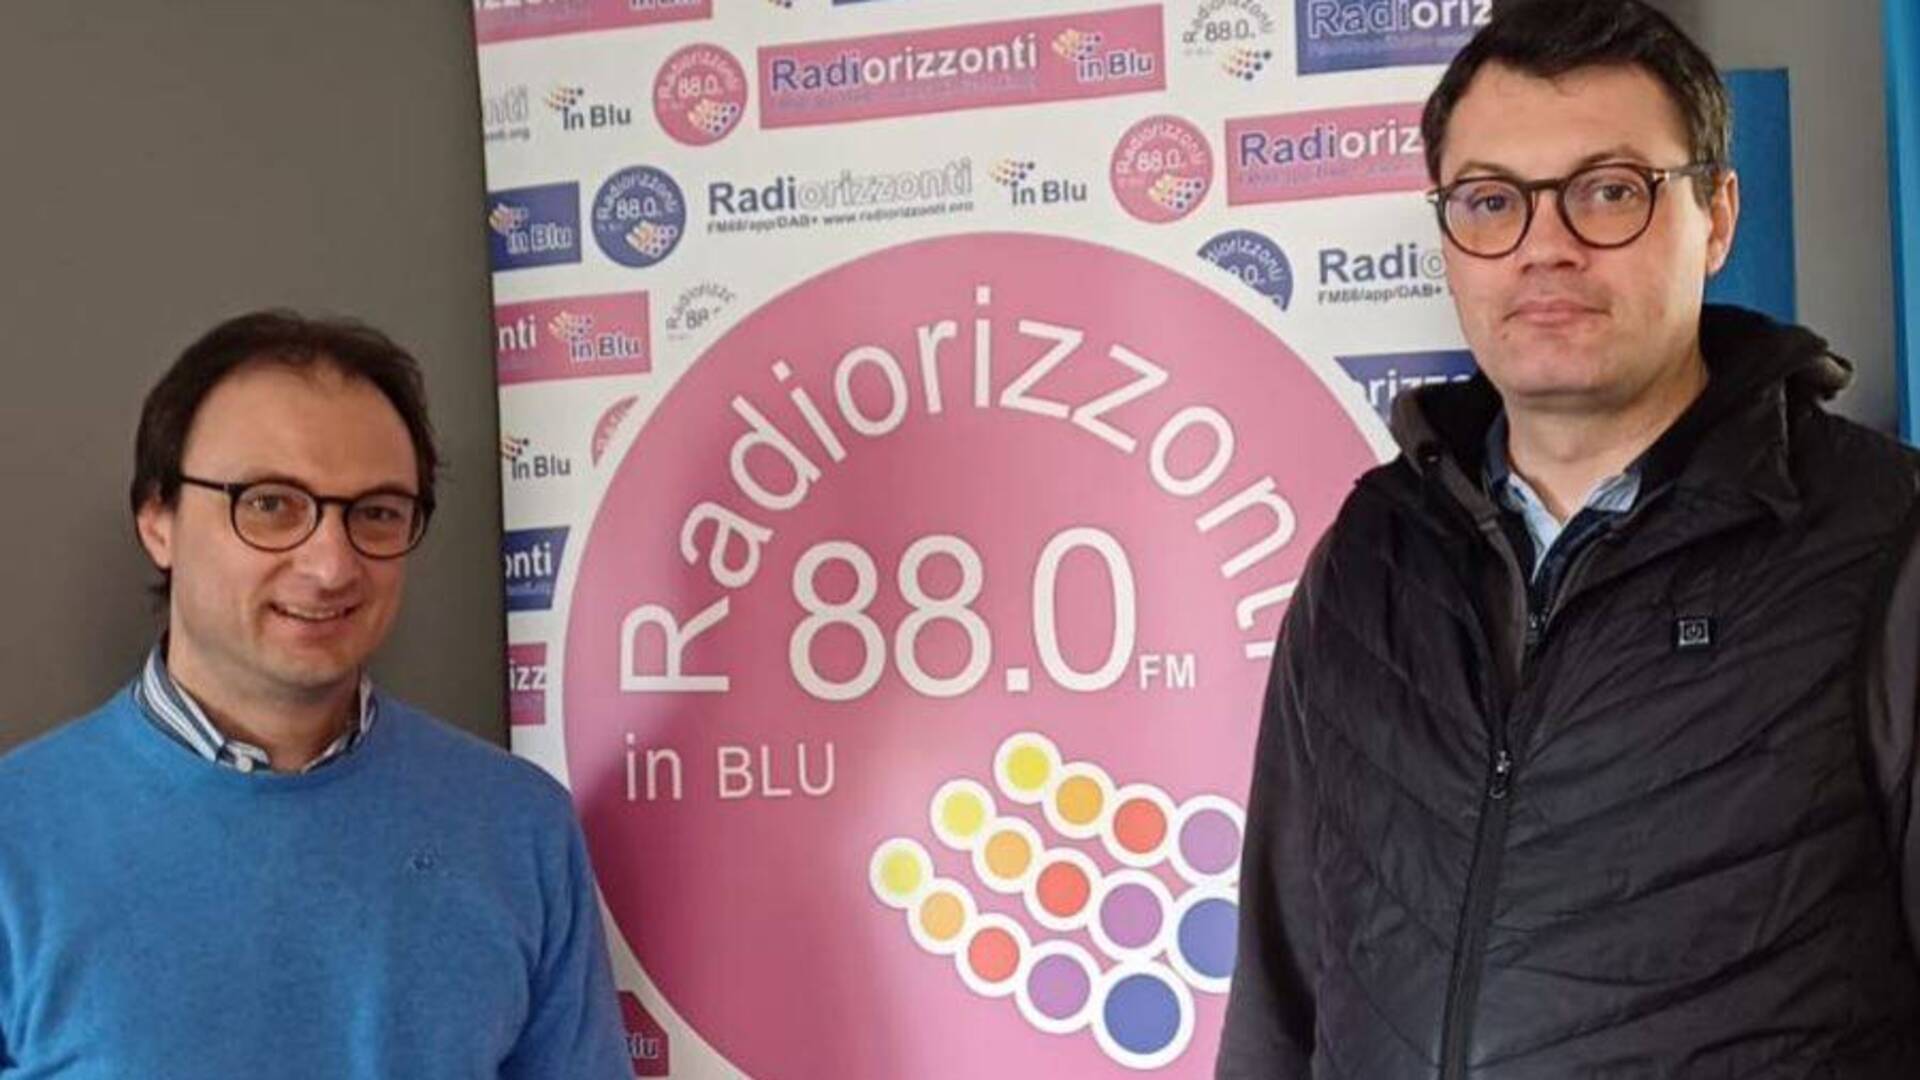 Carugati e Banfi a Radiorizzonti per parlare di Avis: nata nuova collaborazione